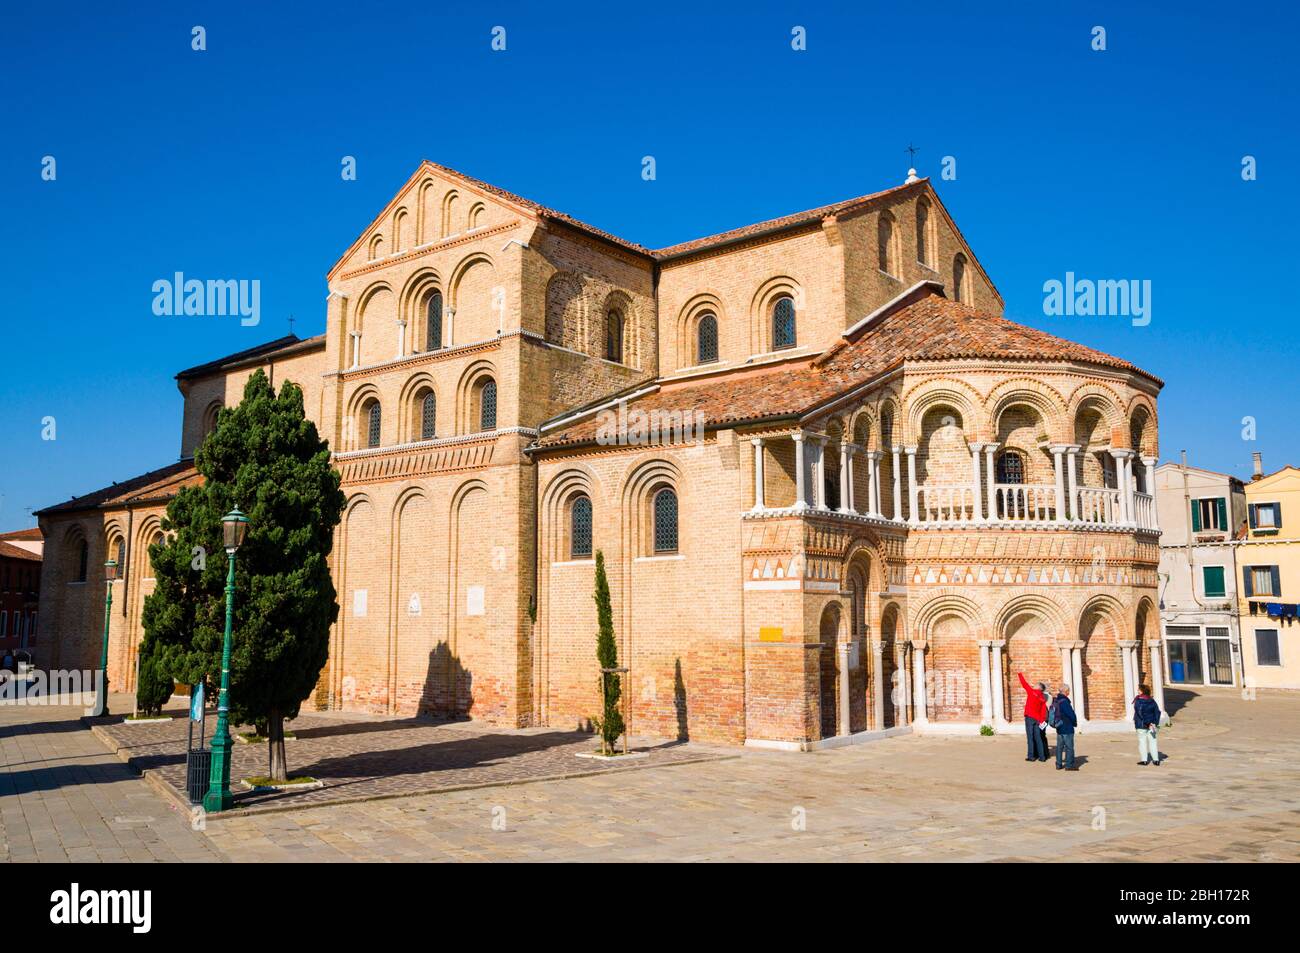 Chiesa dei Santi Maria e Donato, Campo San Donato, Murano island, Venice, Italy Stock Photo